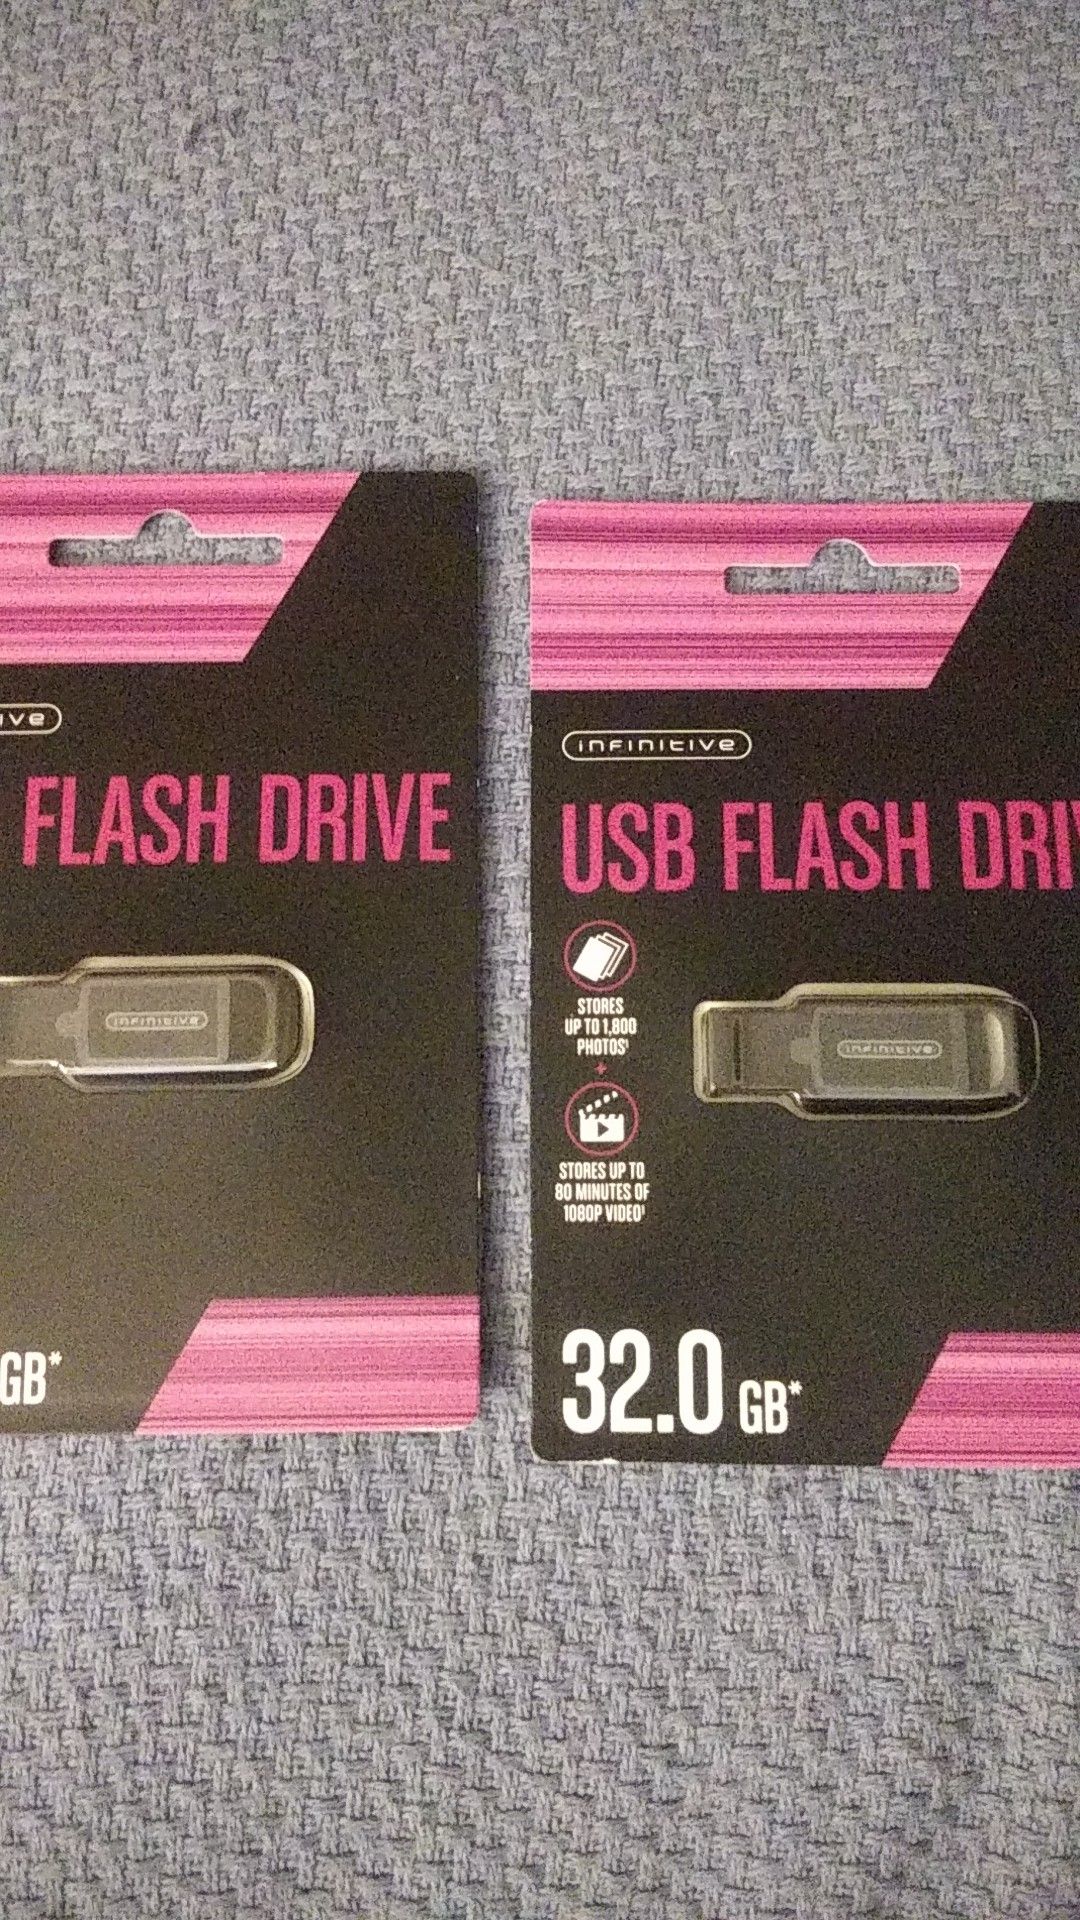 2 32 GB USB flash drives